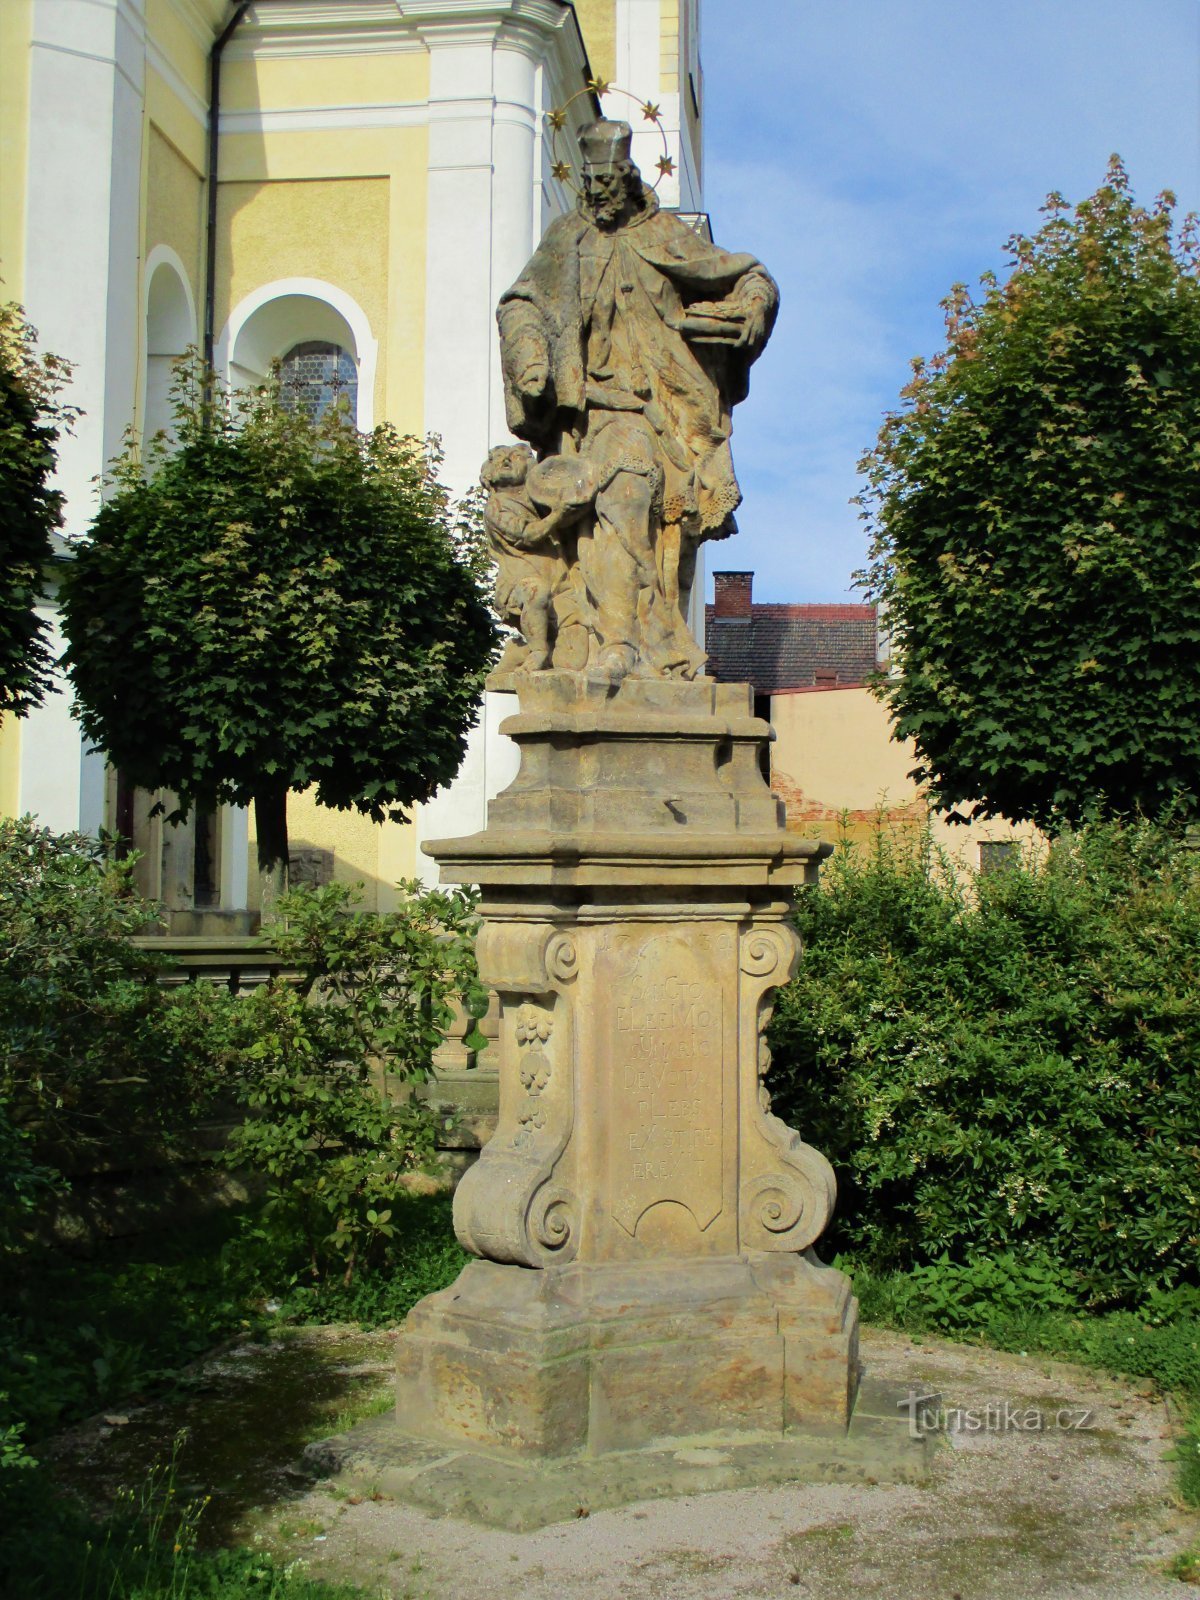 Standbeeld van St. Jan van Nepomuck in de kerk (Hořice, 26.7.2020 juli XNUMX)